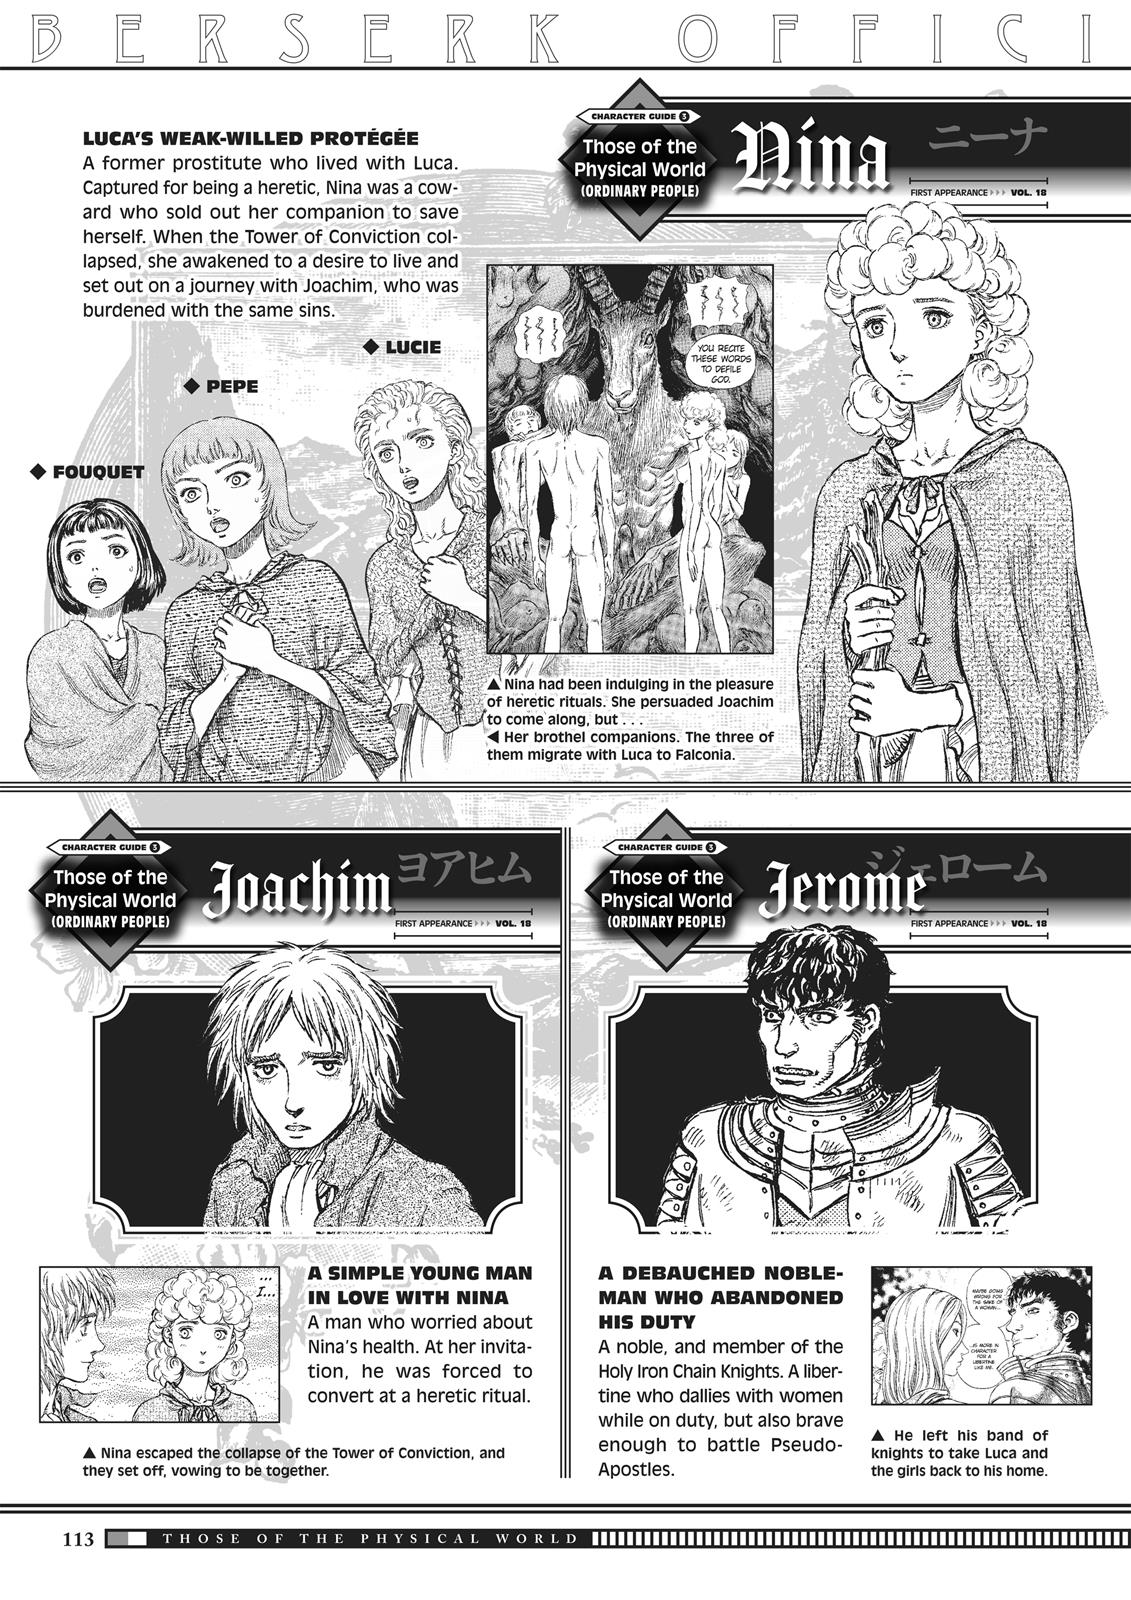 Berserk Manga Chapter 350.5 image 111